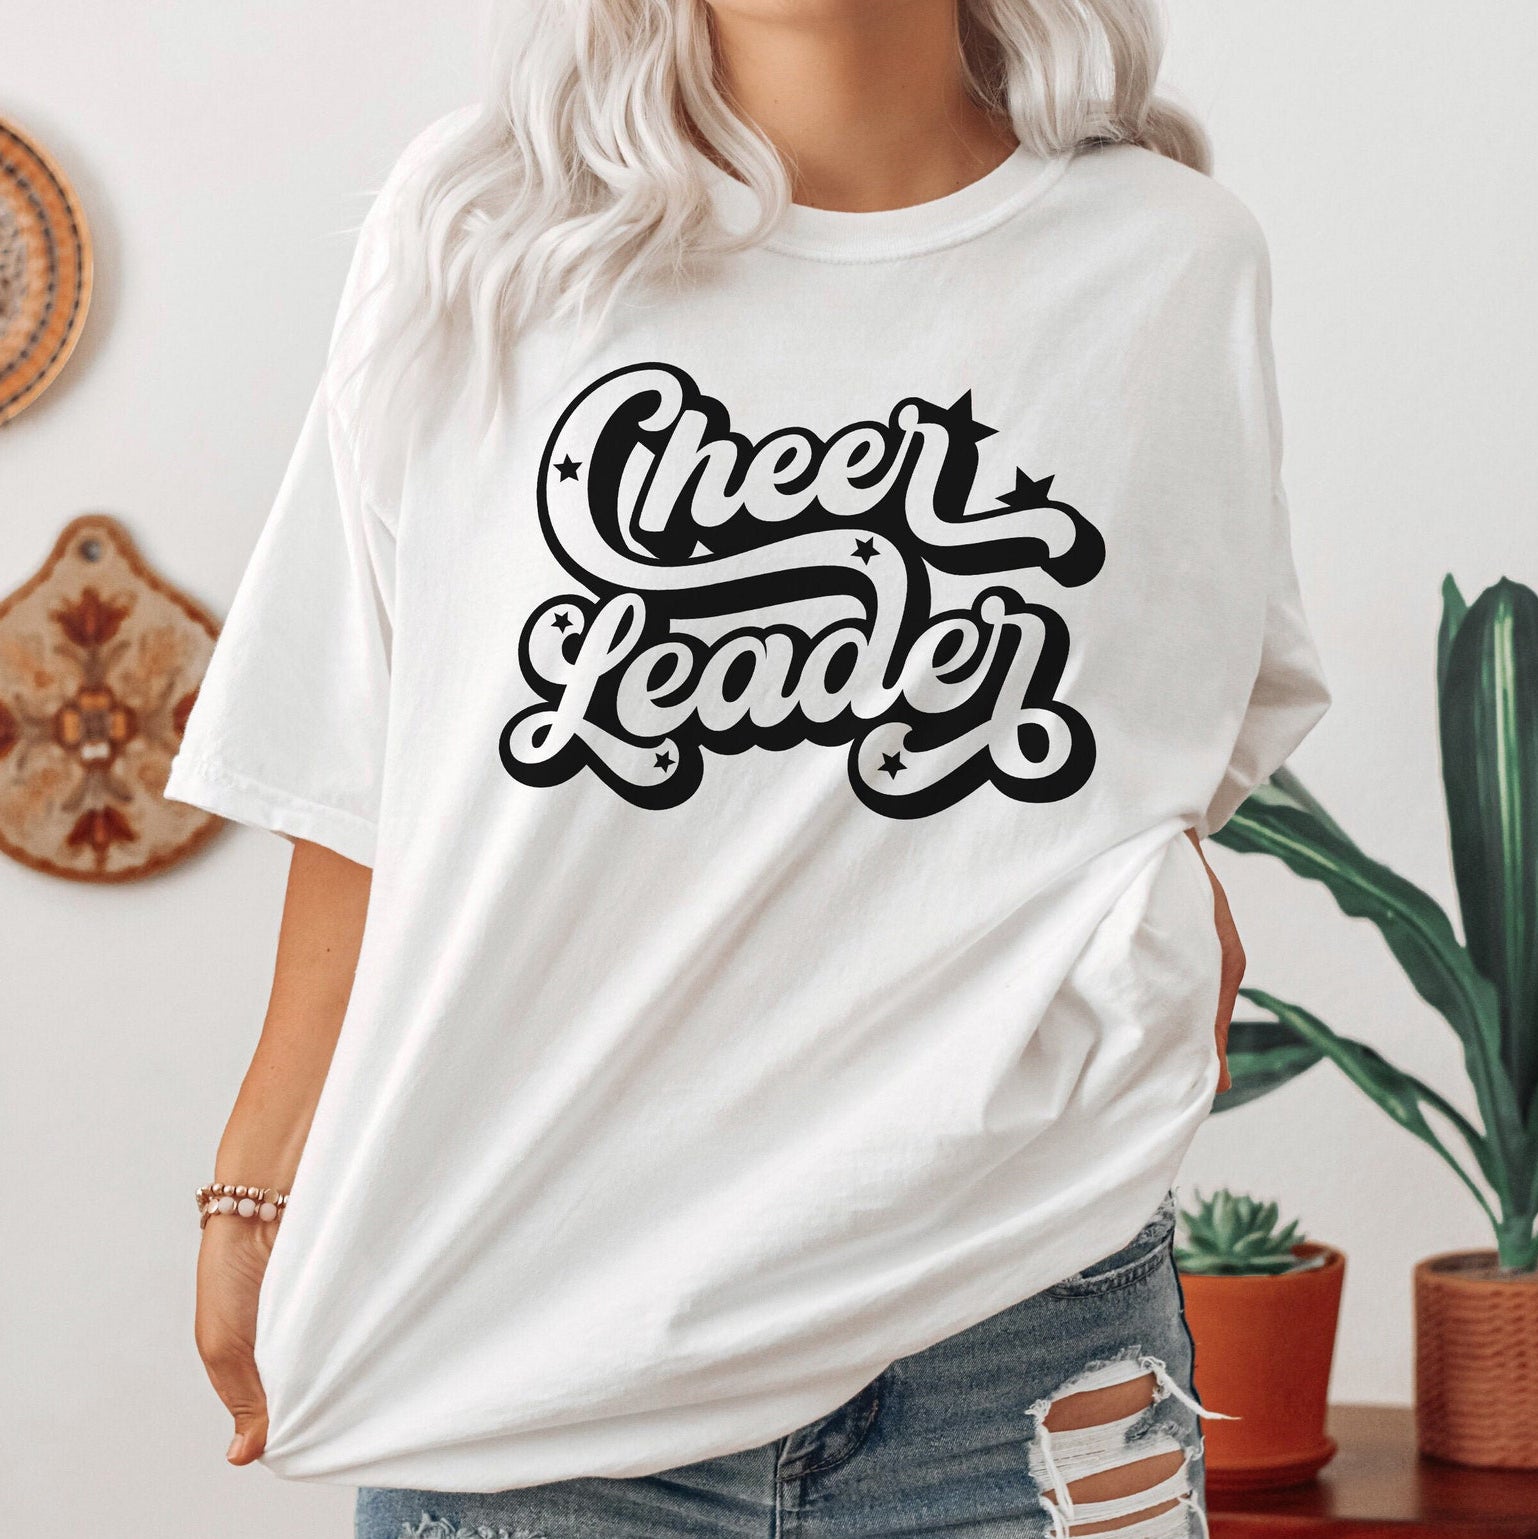 Cheer Leader Shirt